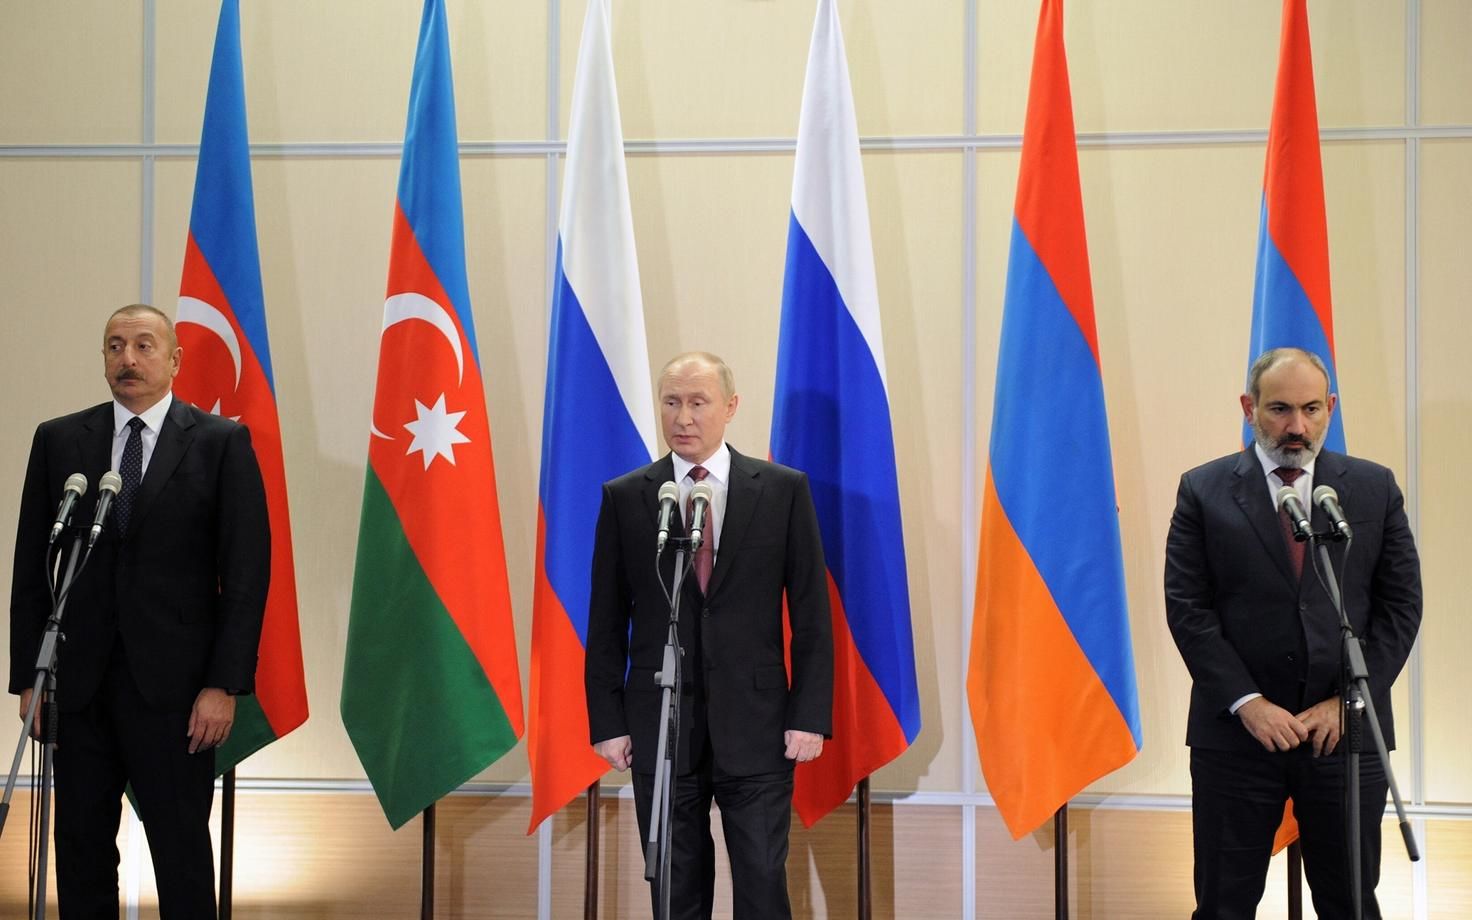 ​Пашинян предупредил о планах РФ присоединить Армению и Азербайджан к "Союзному государству" - СМИ